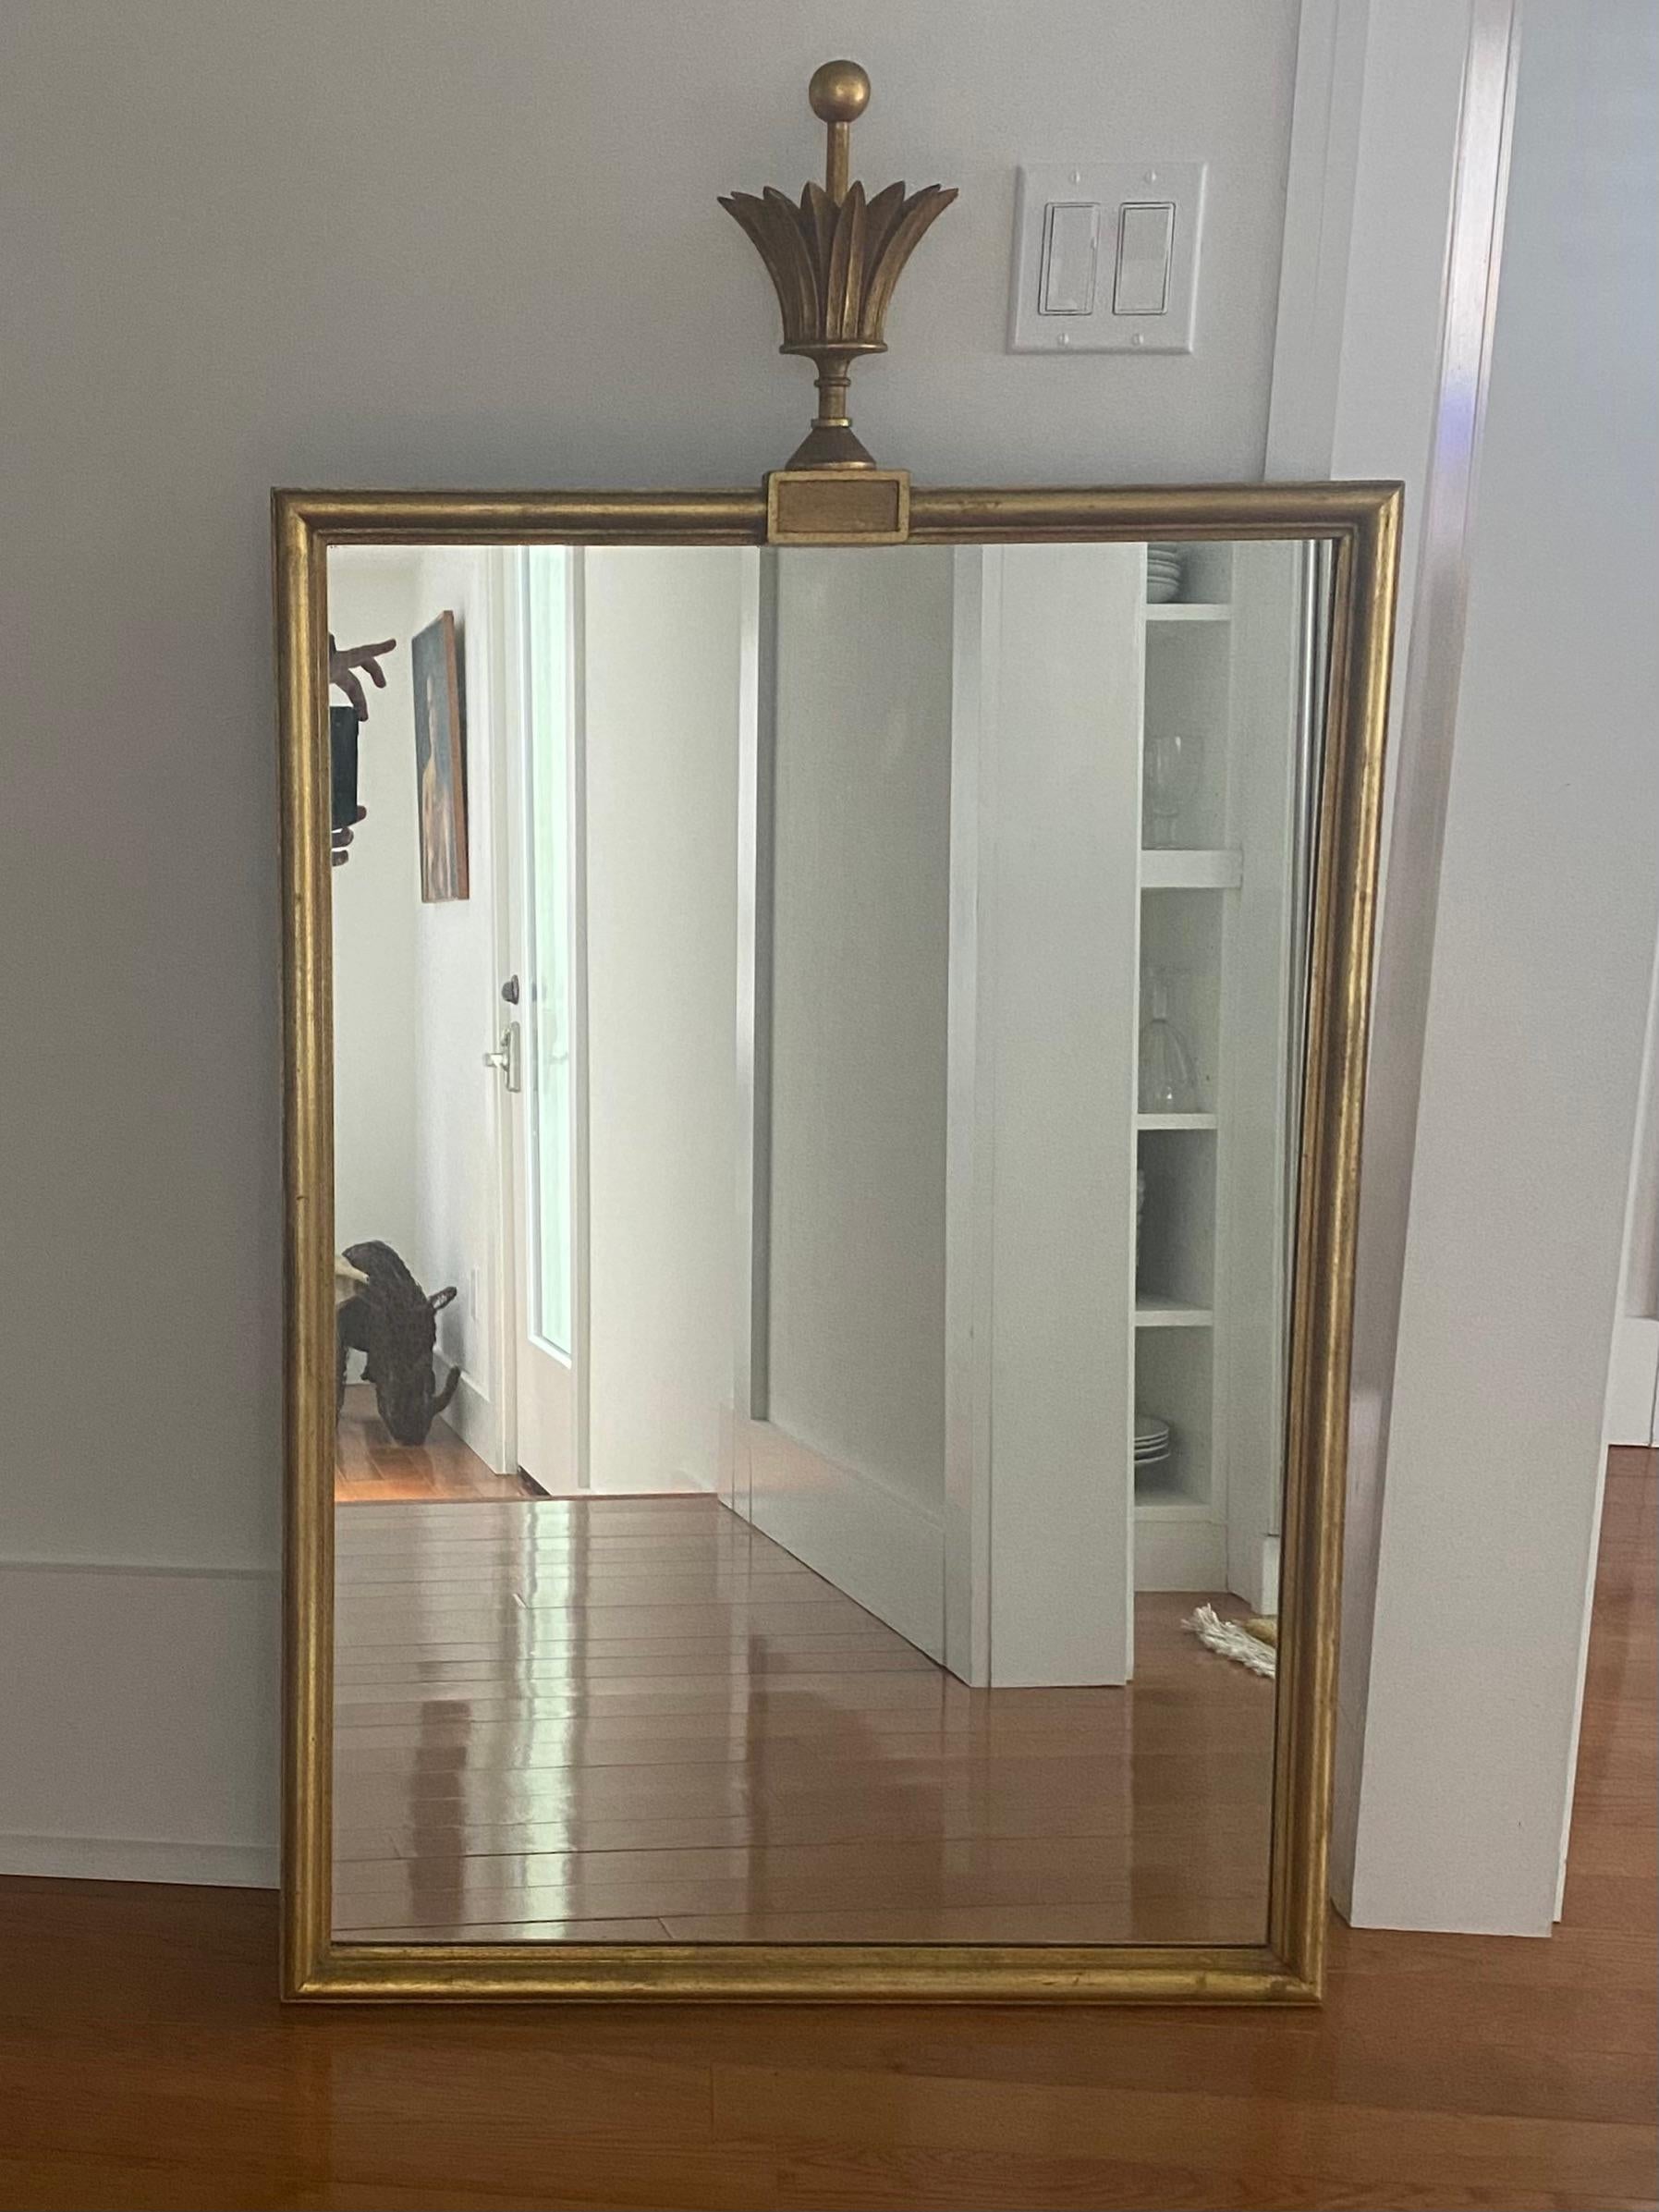 Tommi Parzinger rechteckiger Spiegel mit Kronleuchter.
Etikett auf der Rückseite mit D. Milch and Son Inc.
ca. 28 x 40 Zoll plus 10 Zoll Endstück.